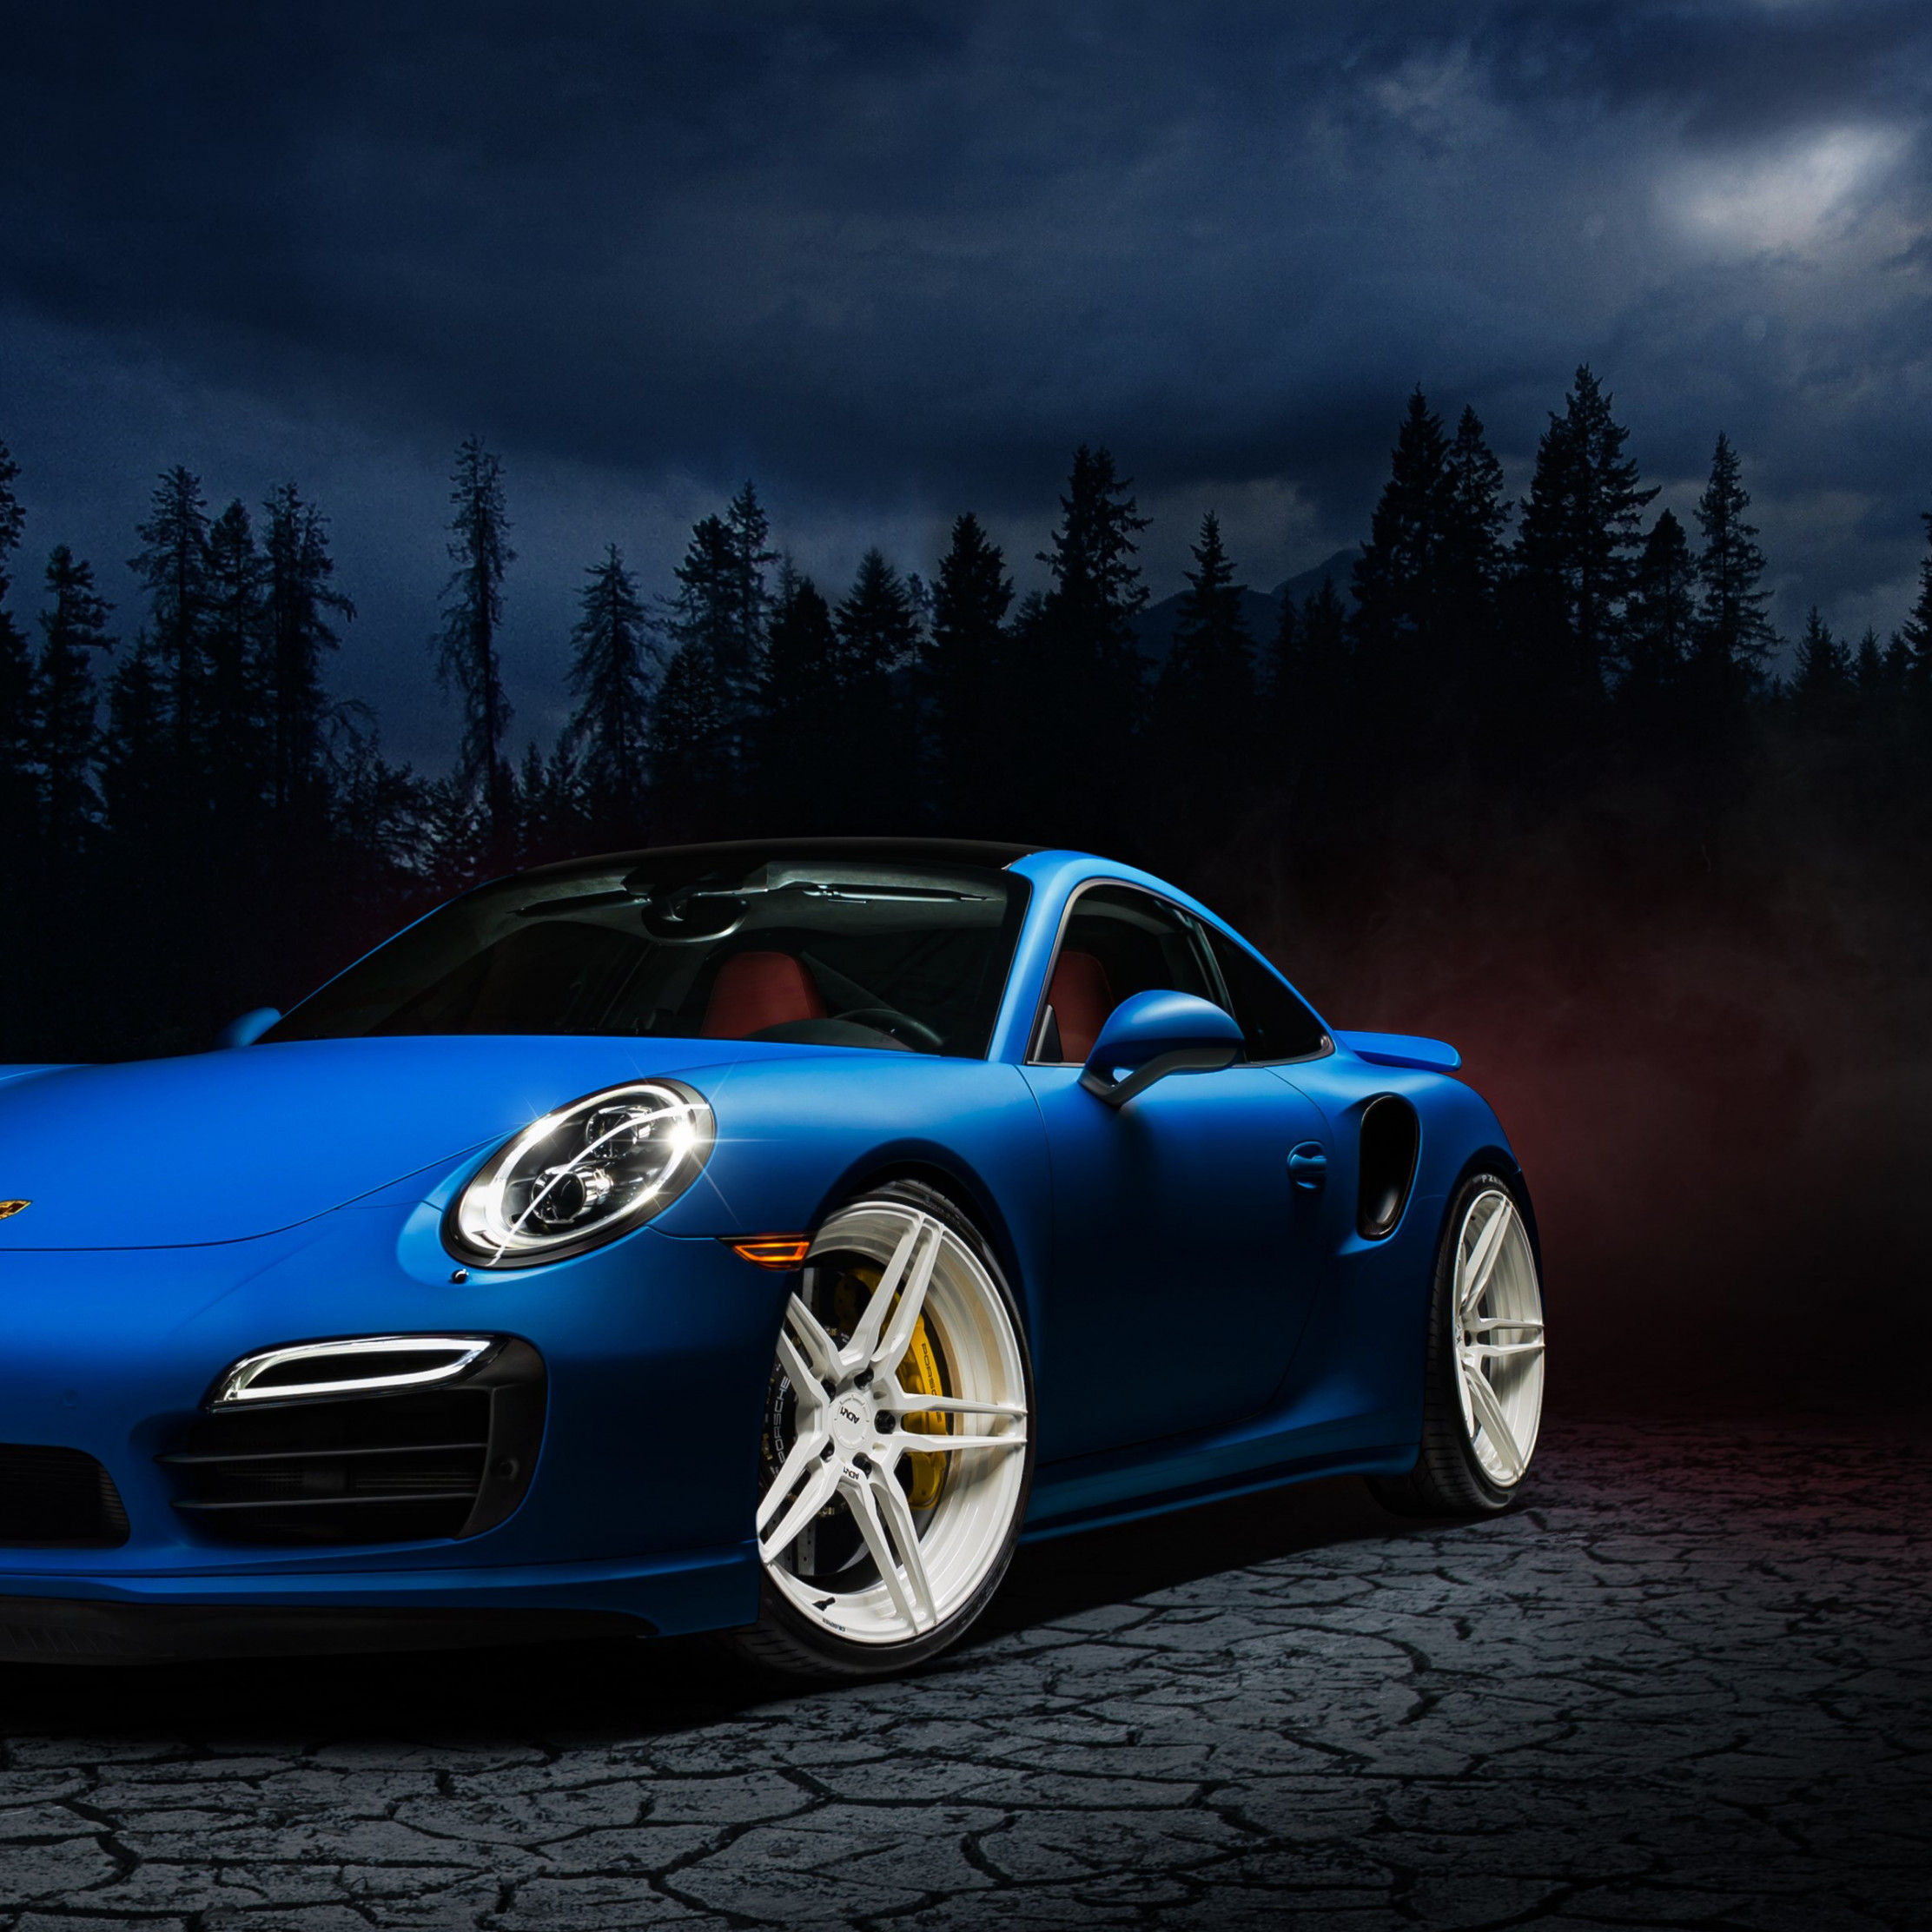 Porsche 911 blue wallpaper 2224x2224